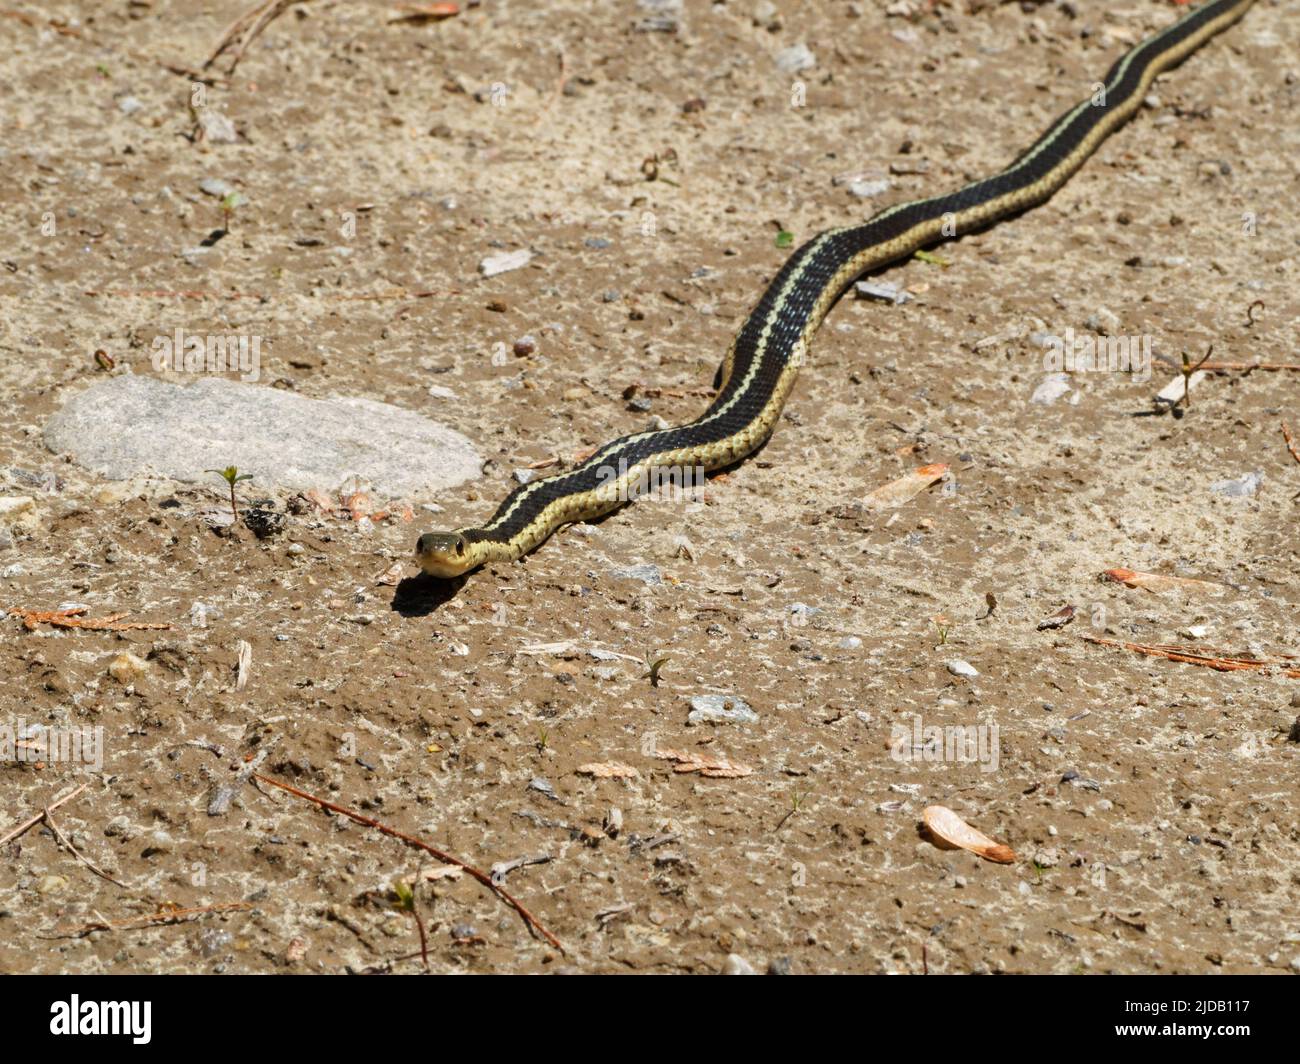 A yellow Garter snake. Quebec,Canada Stock Photo